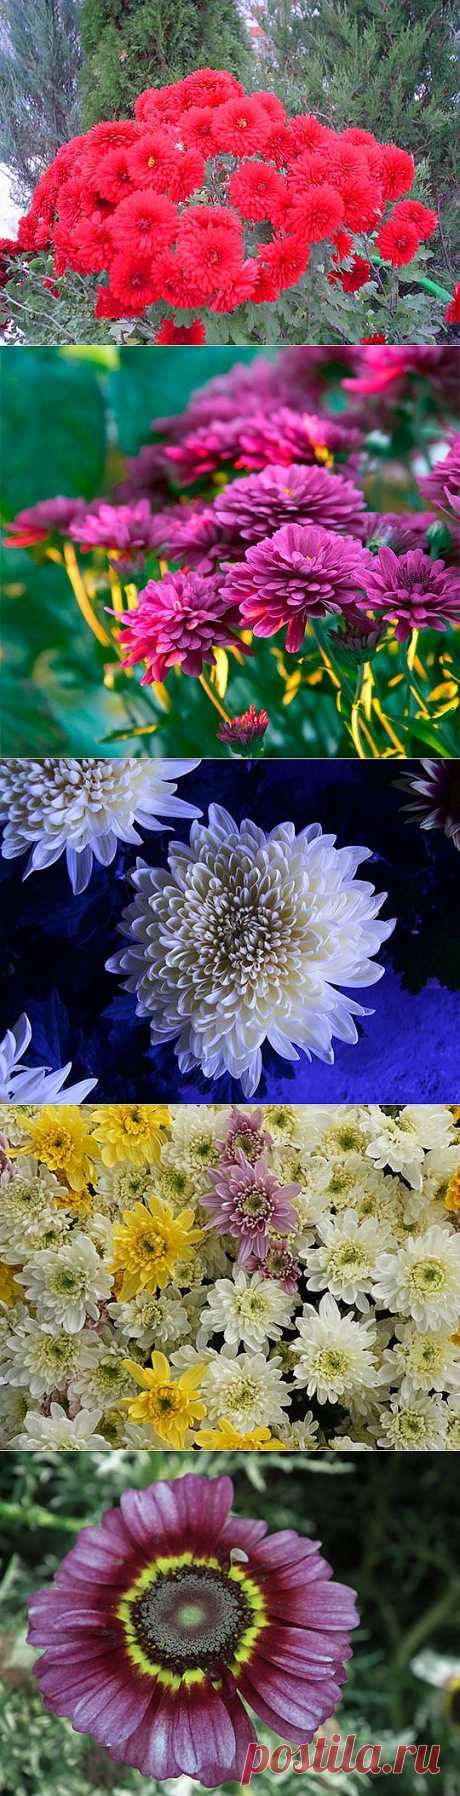 Цветы хризантемы, герберы (61 фото) картинки, видео